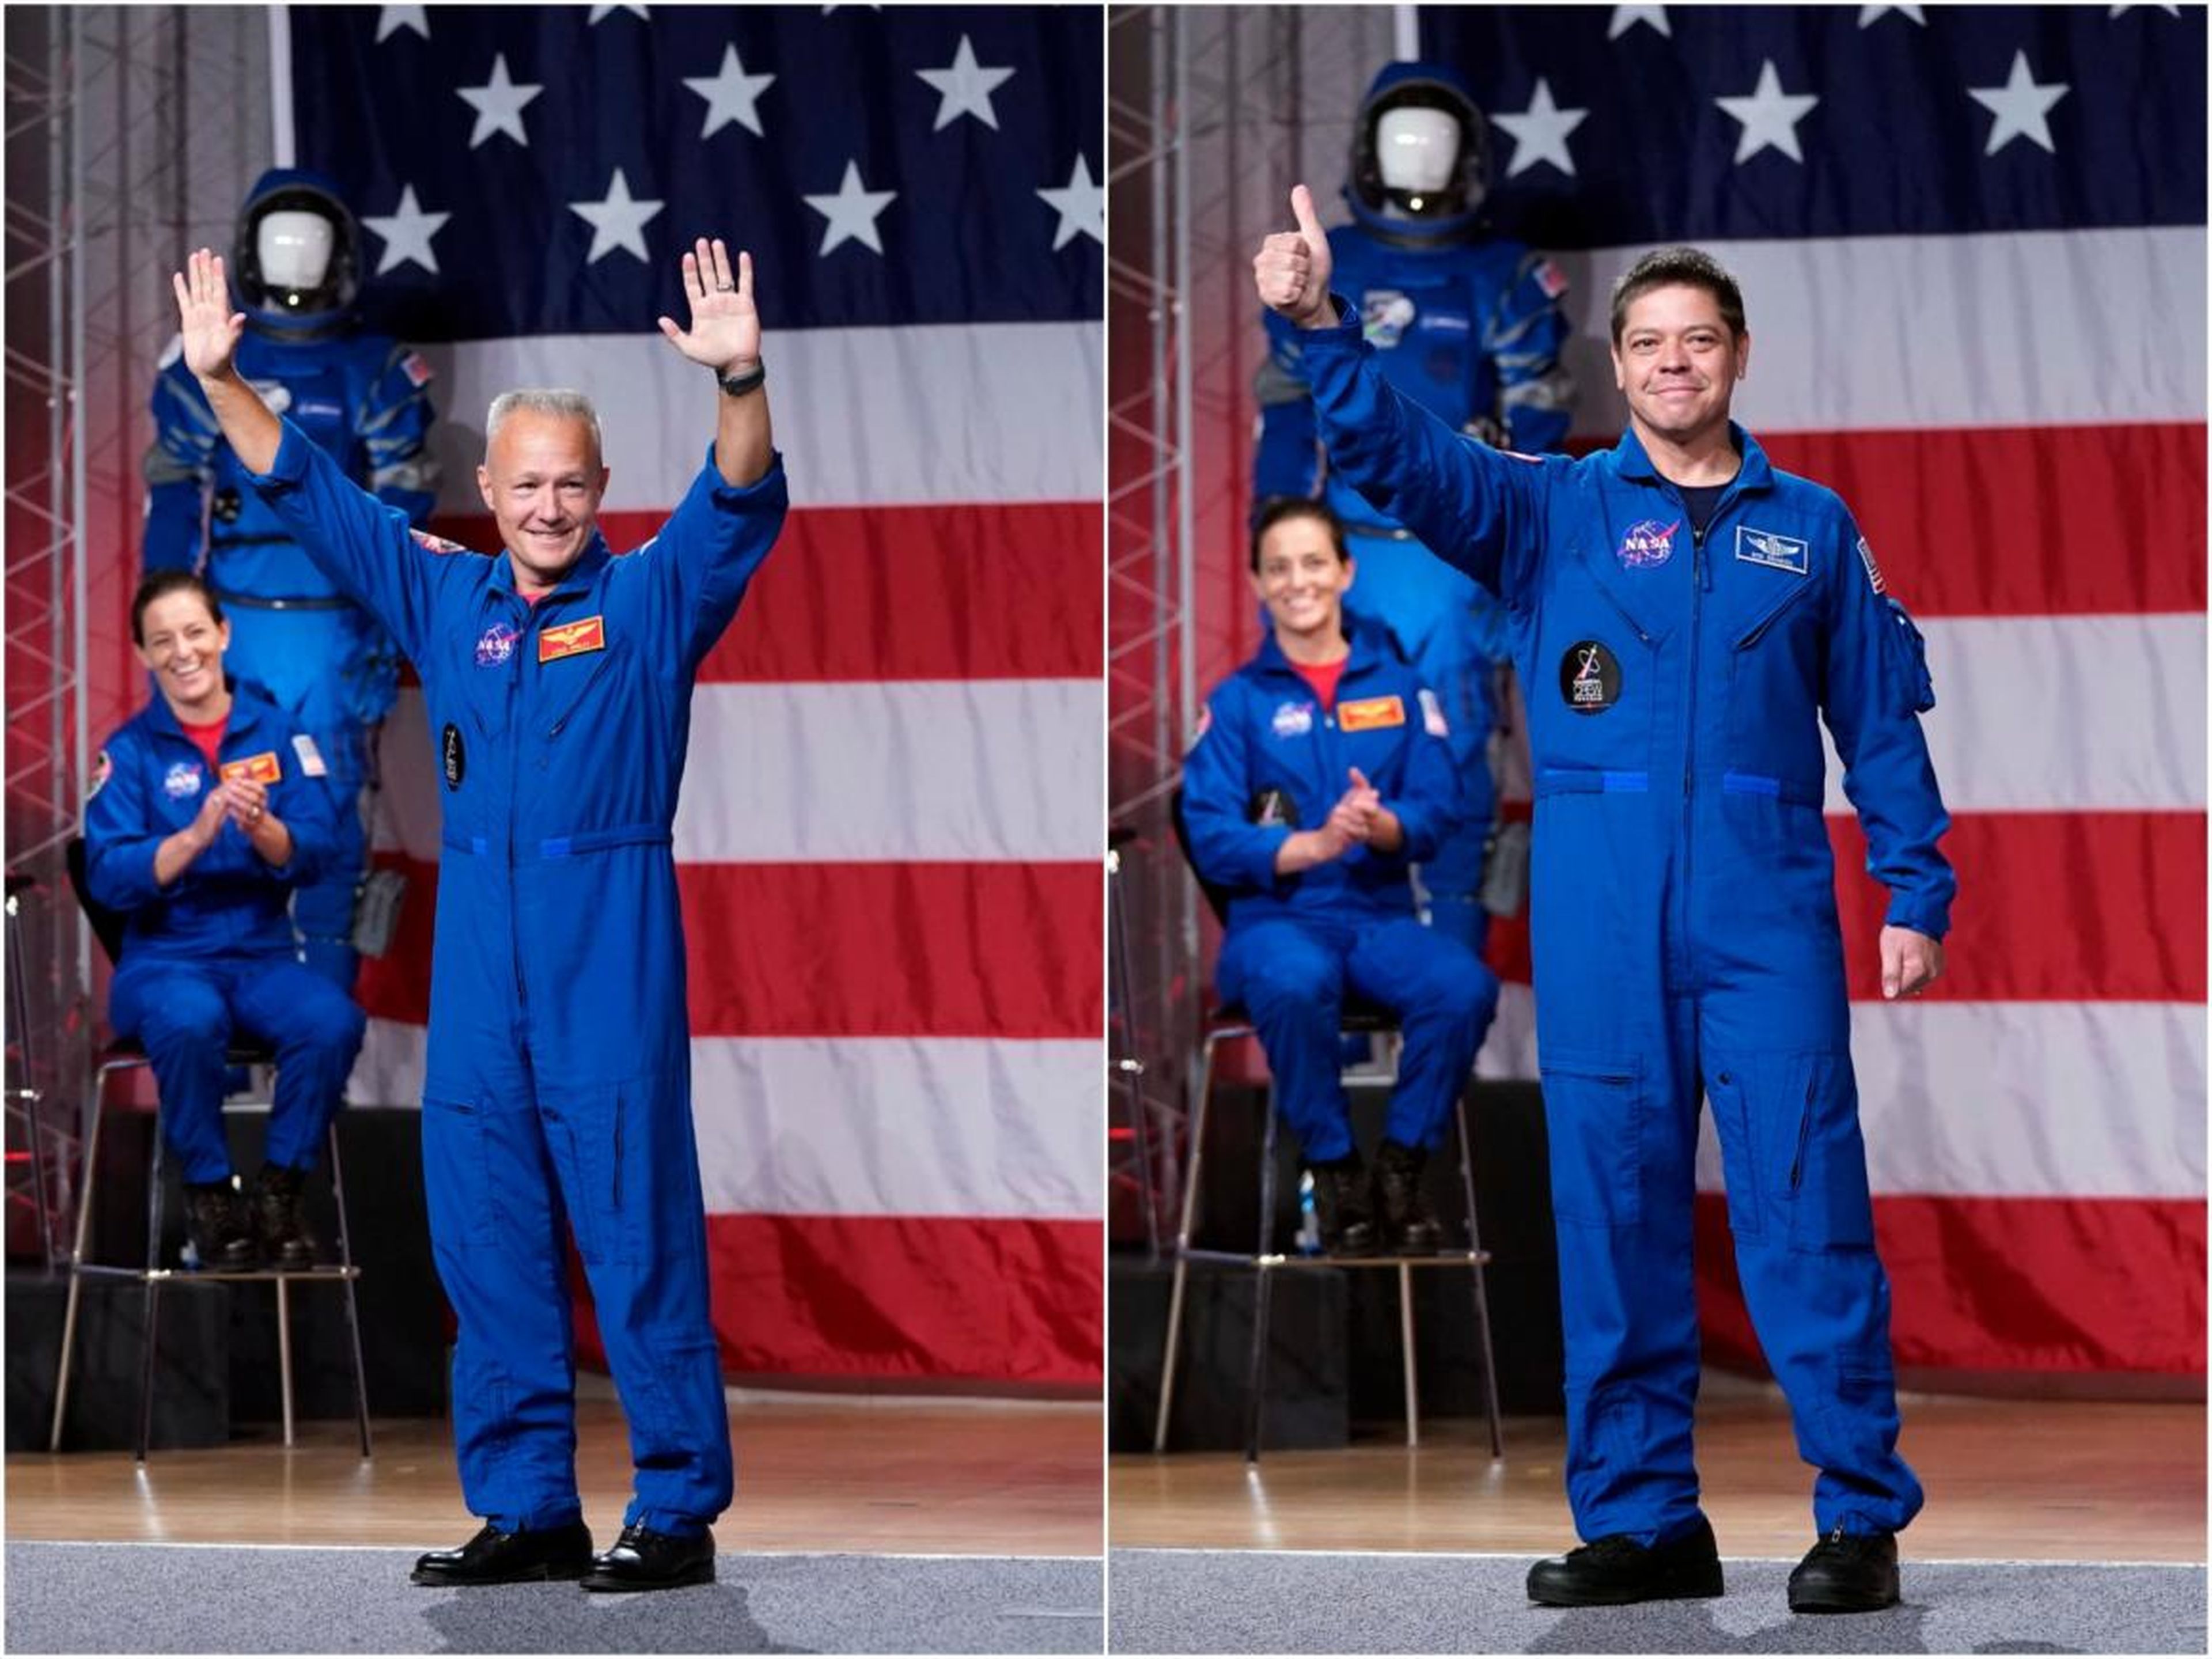 Los astronautas Doug Hurley (izquierda) y Robert "Bob" Behnken (derecha) después de ser seleccionados para la misión de SpaceX.